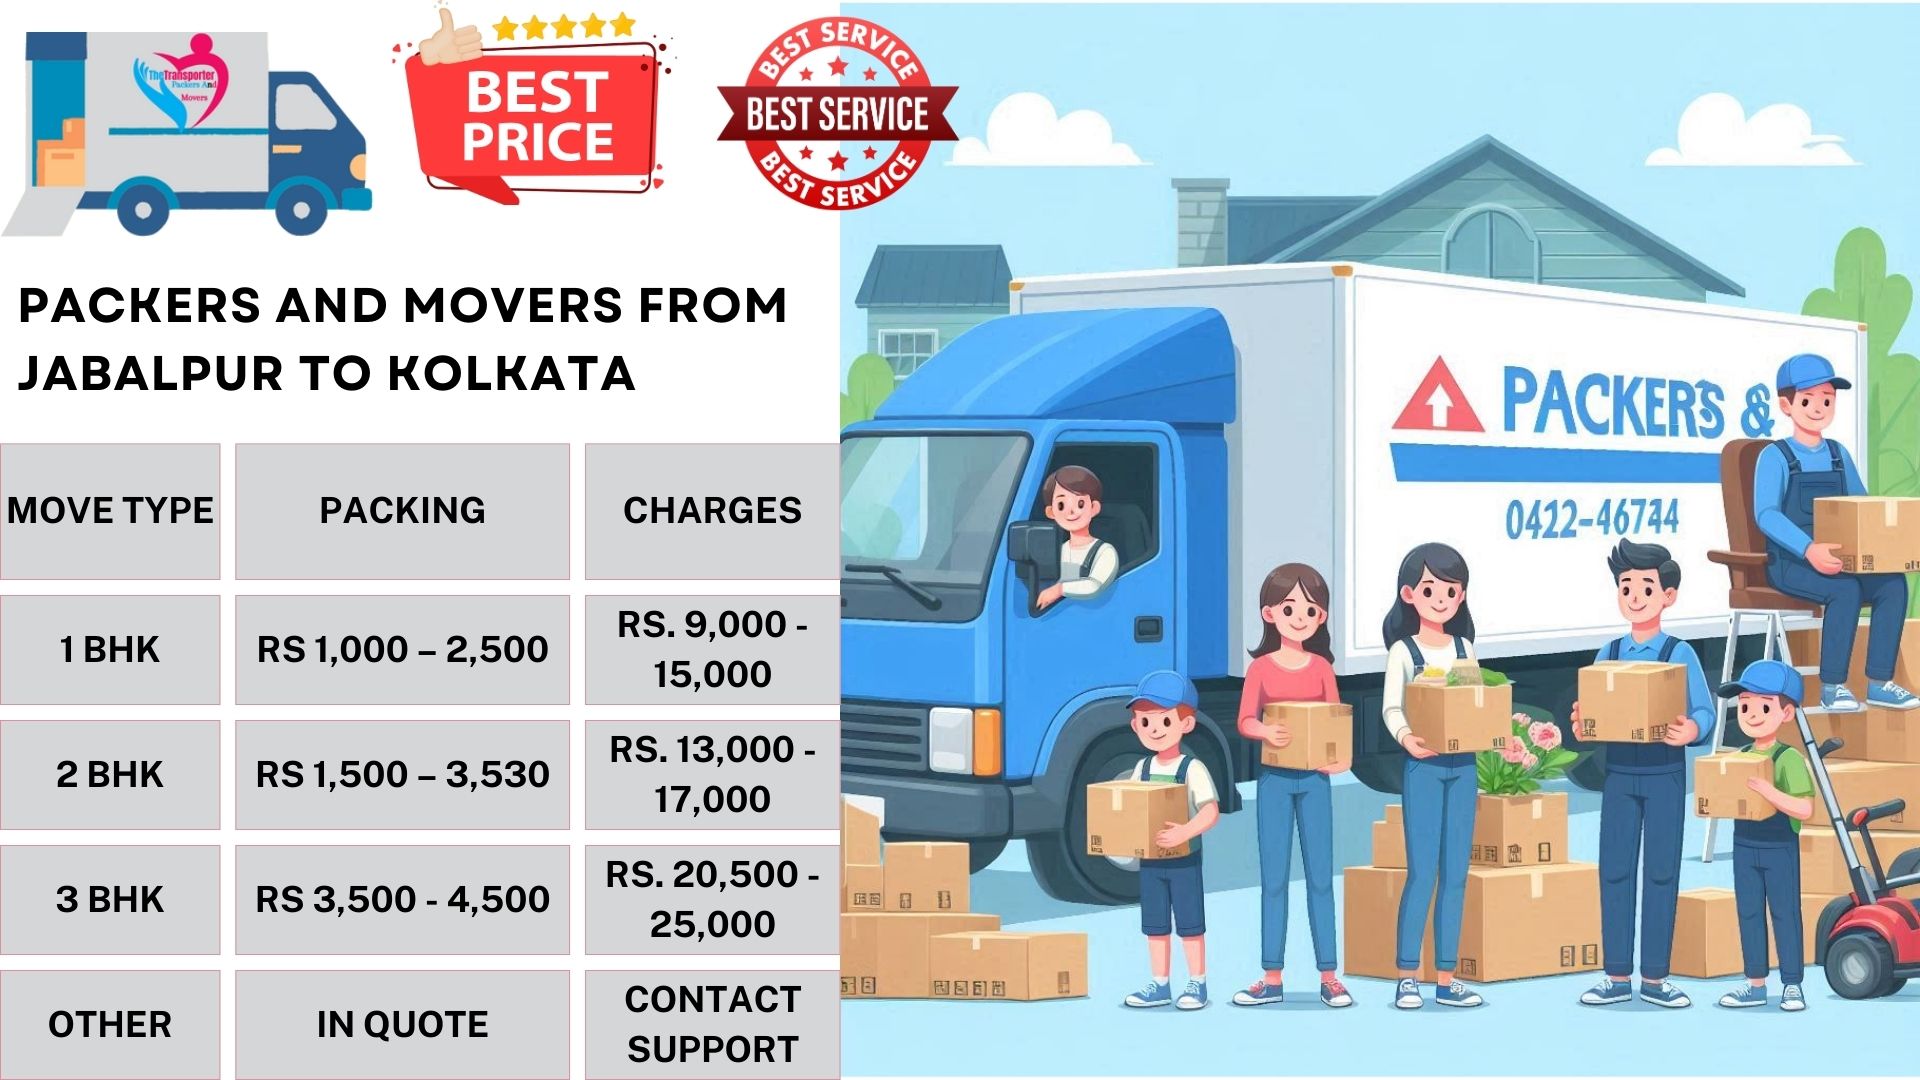 Your household goods shifting from Jabalpur to Kolkata